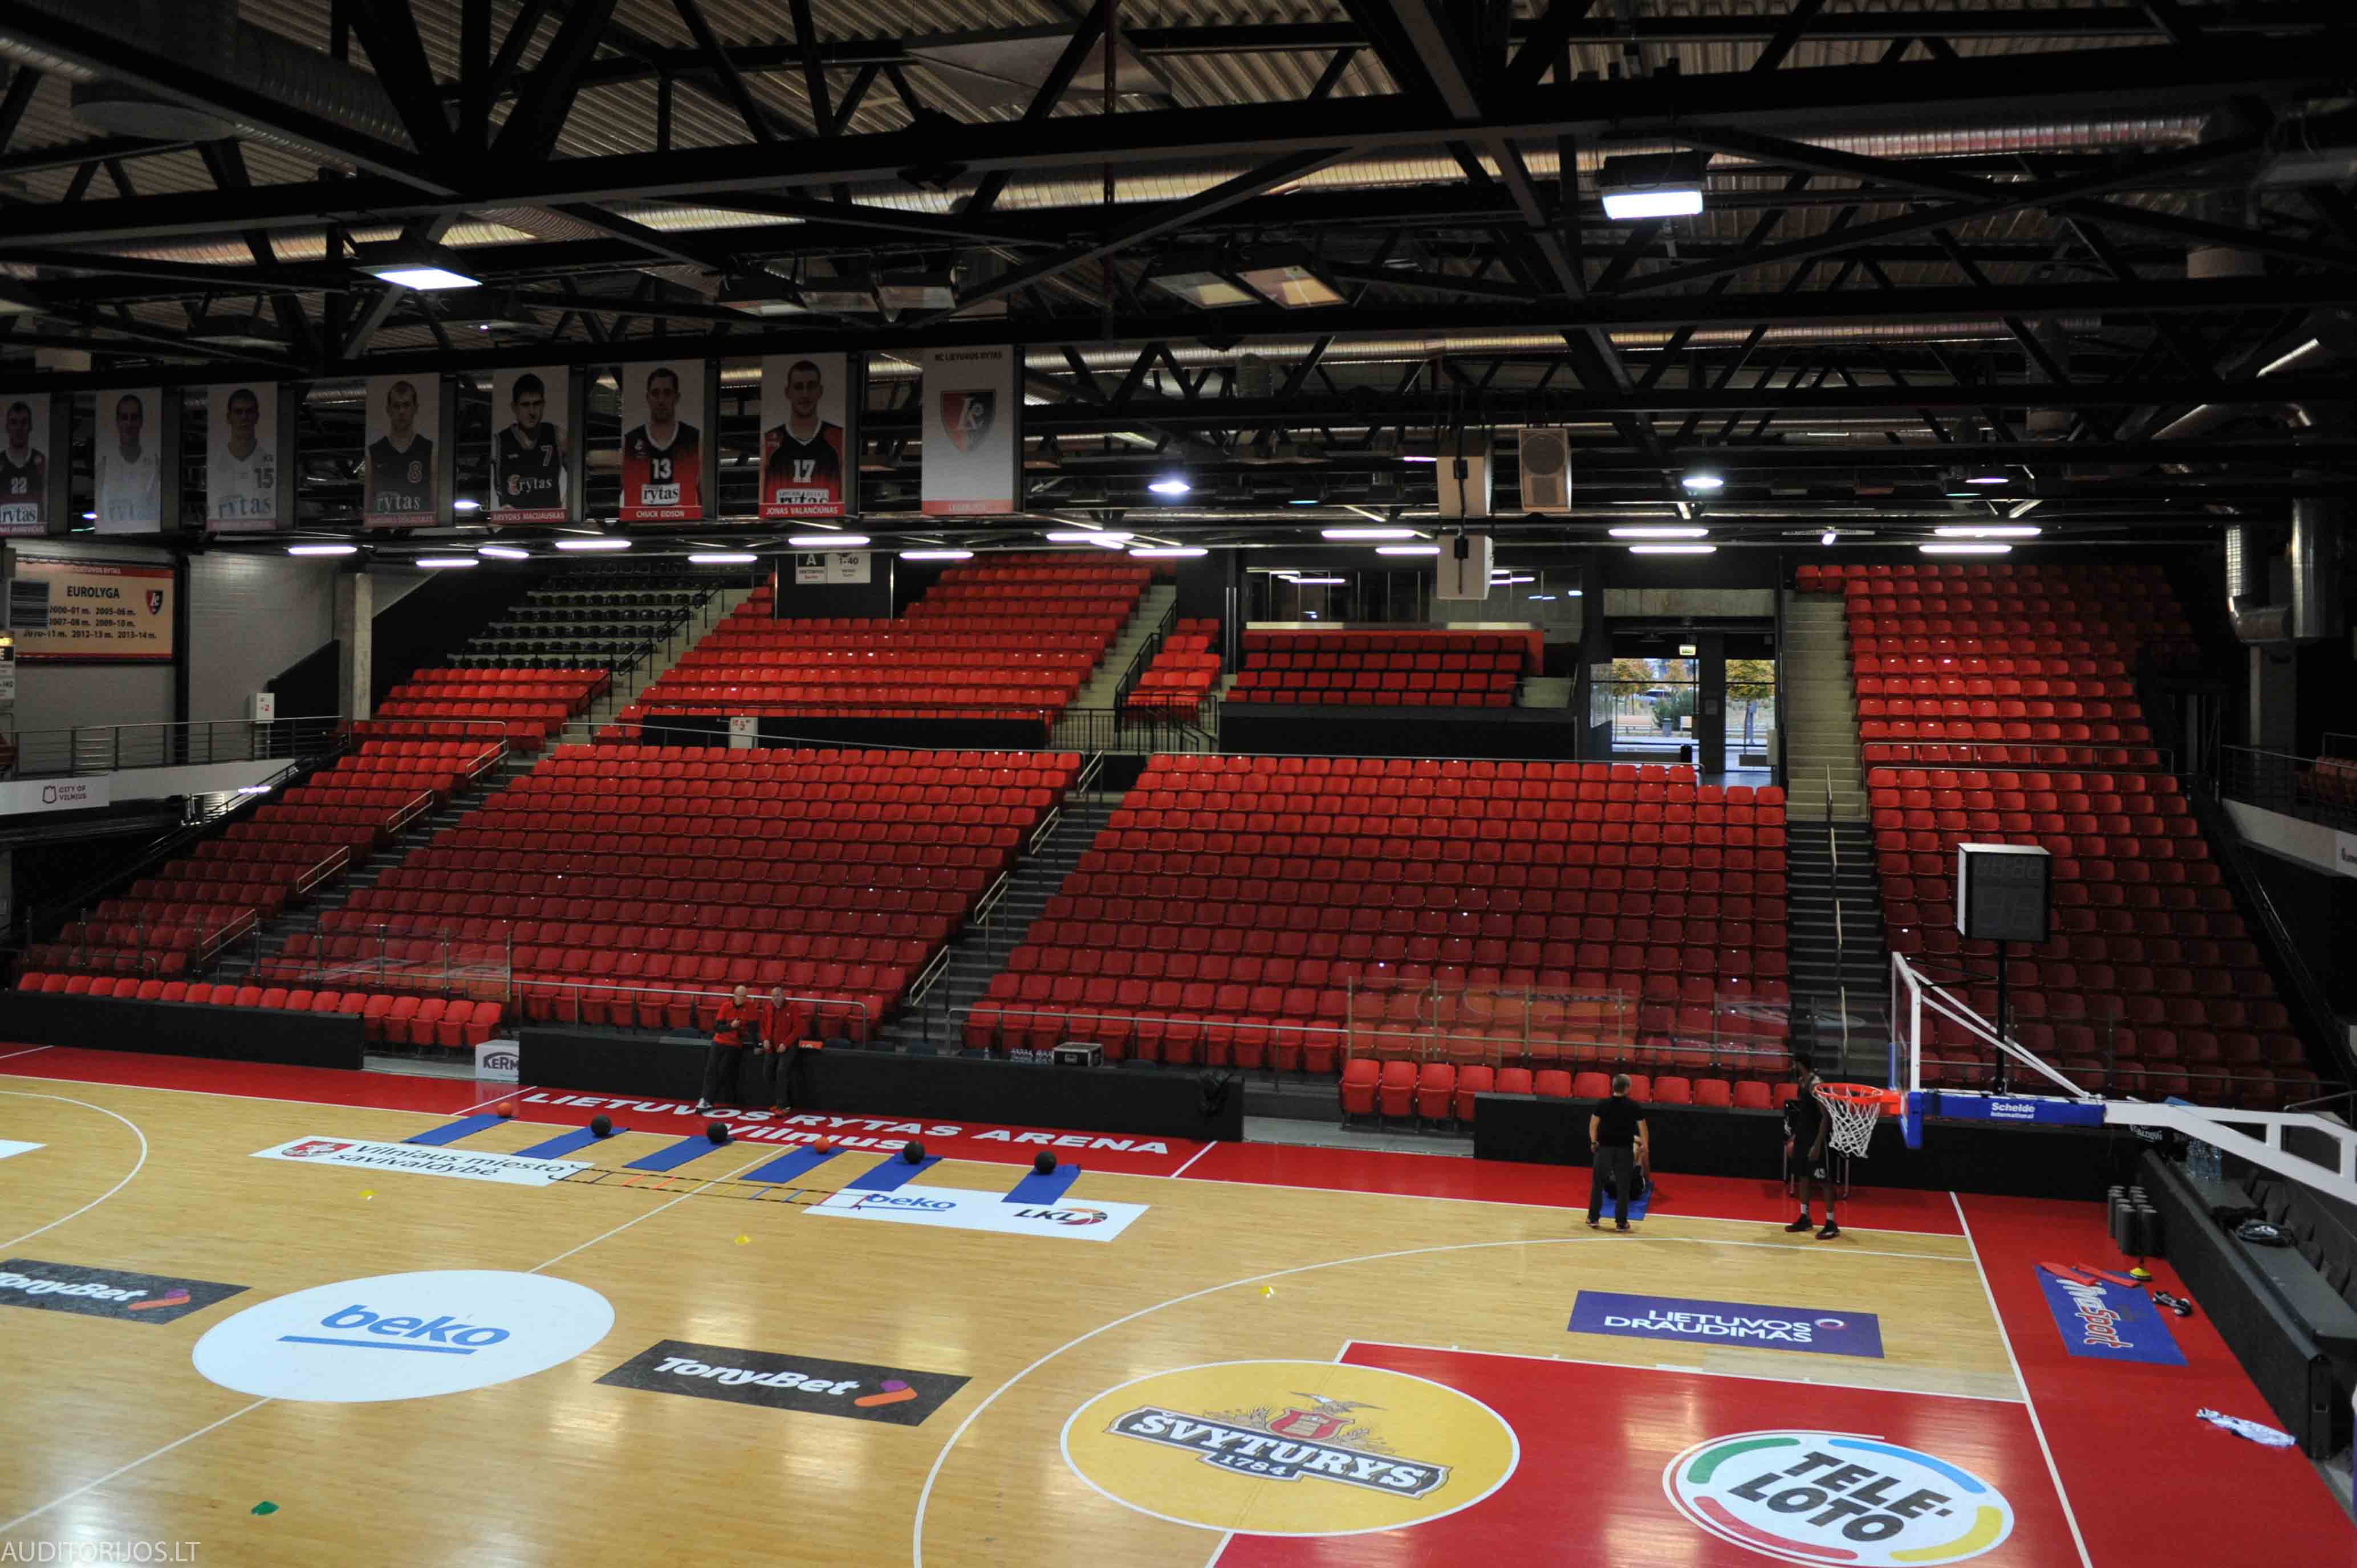 Lietuvos Rytas Arena Seating Vertika DSC_3352